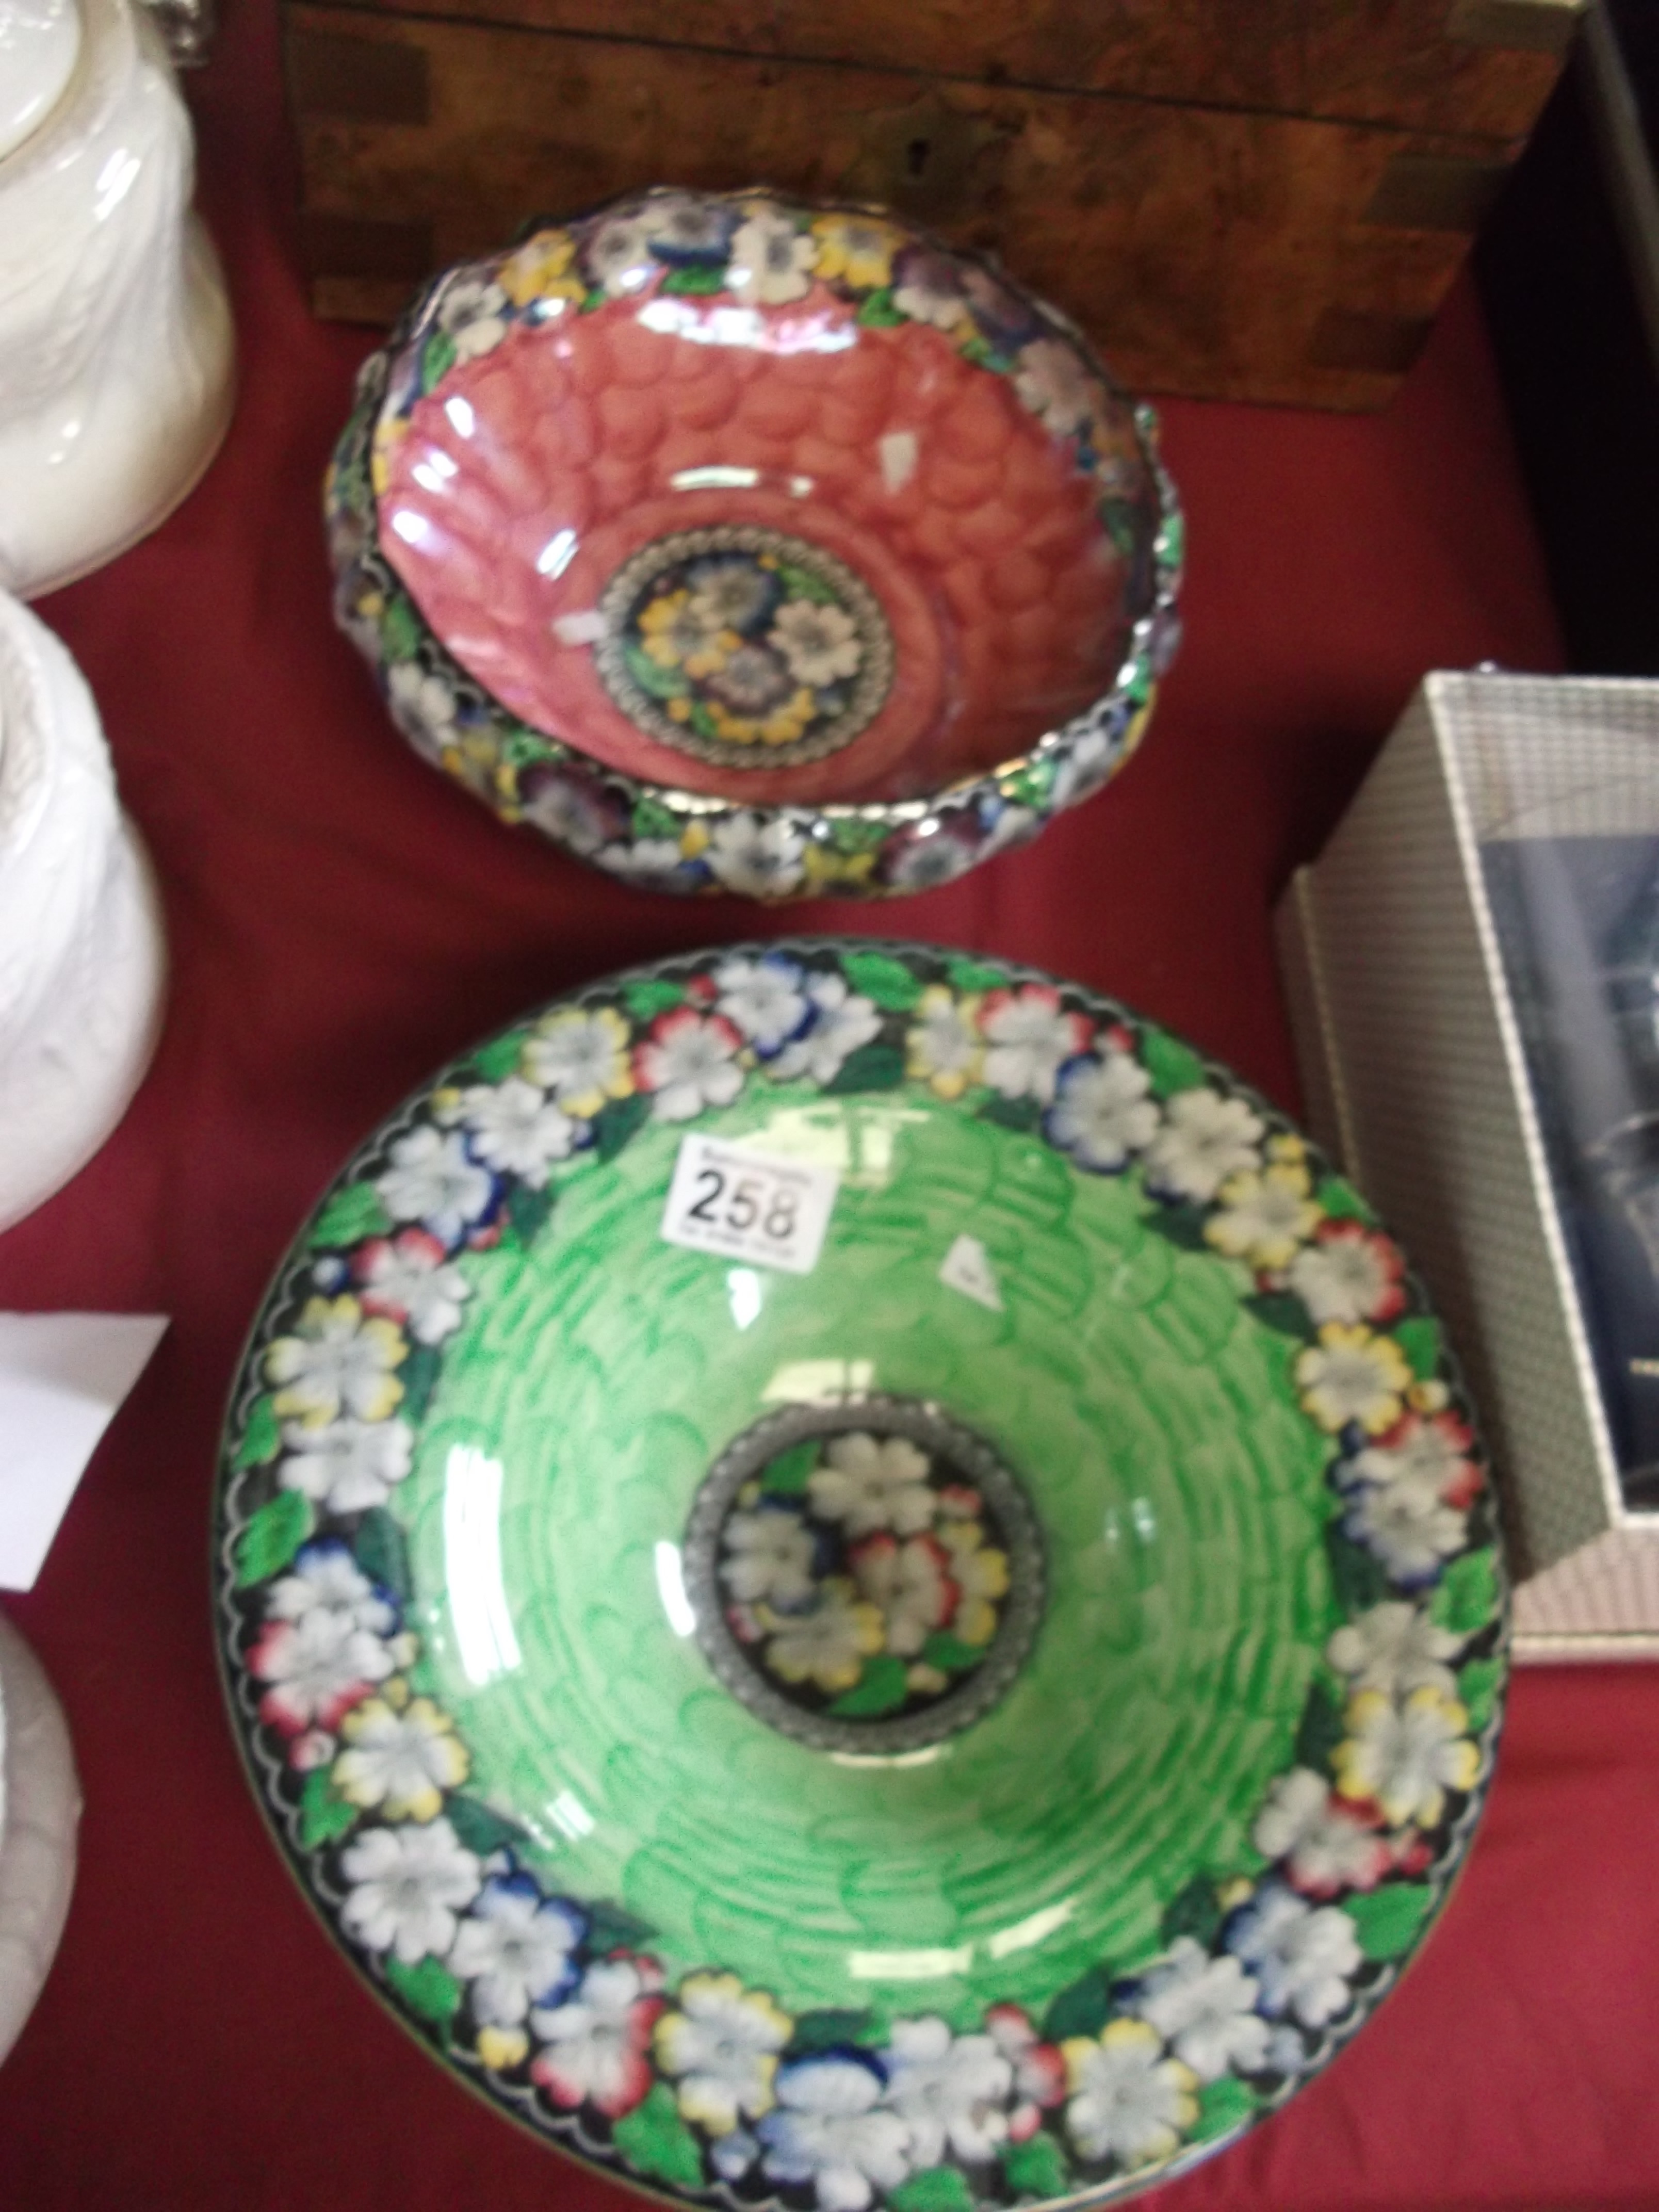 2 Maling bowls